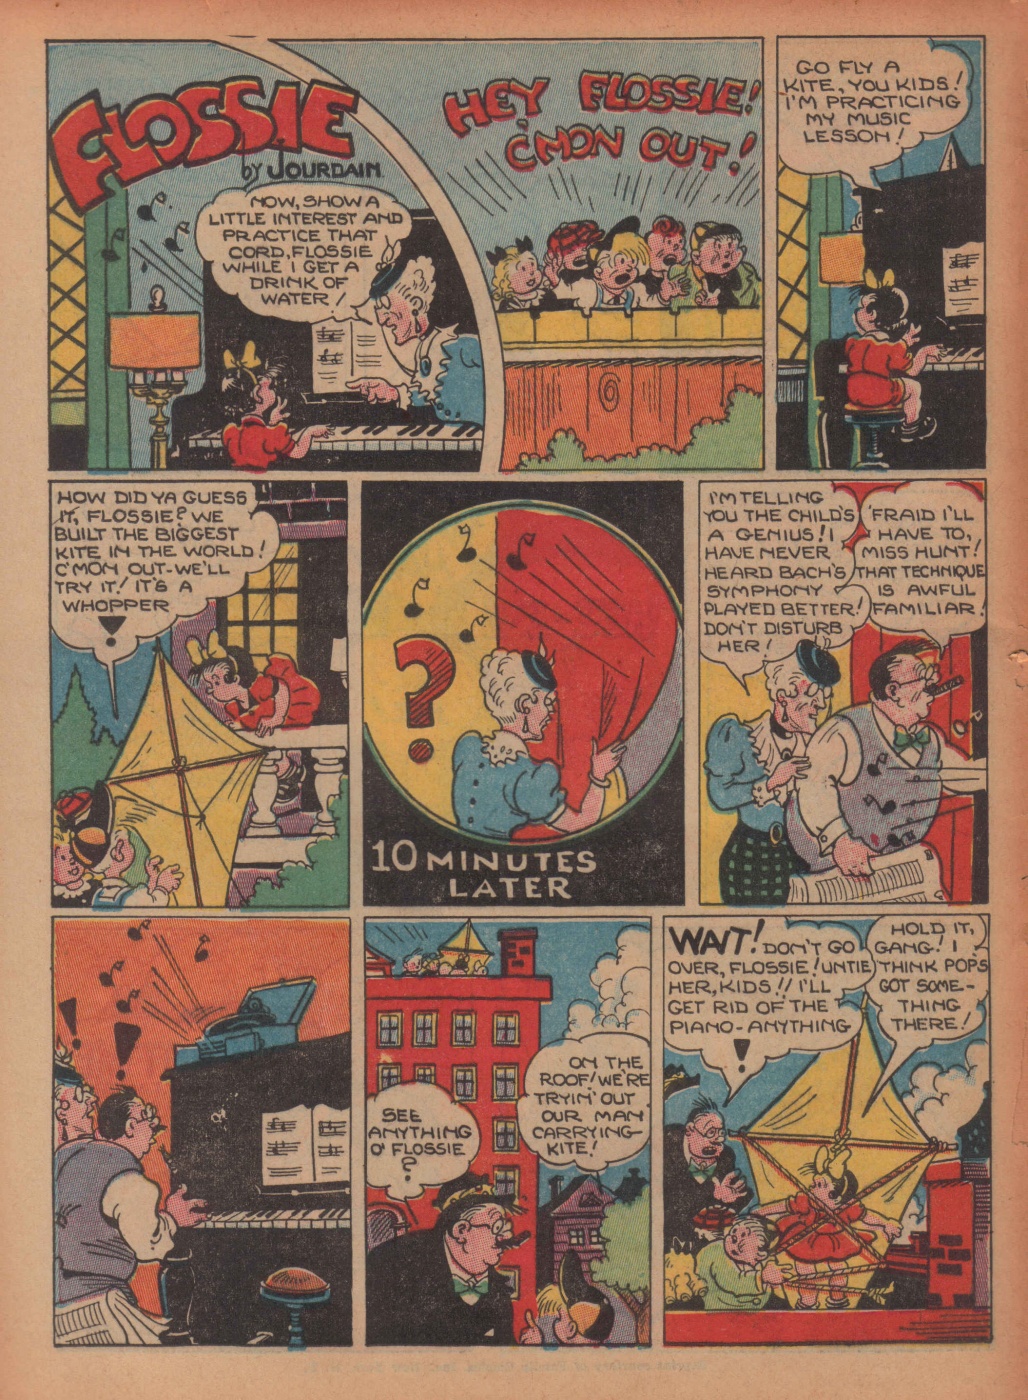 Super Dooper Funny Comics (32)